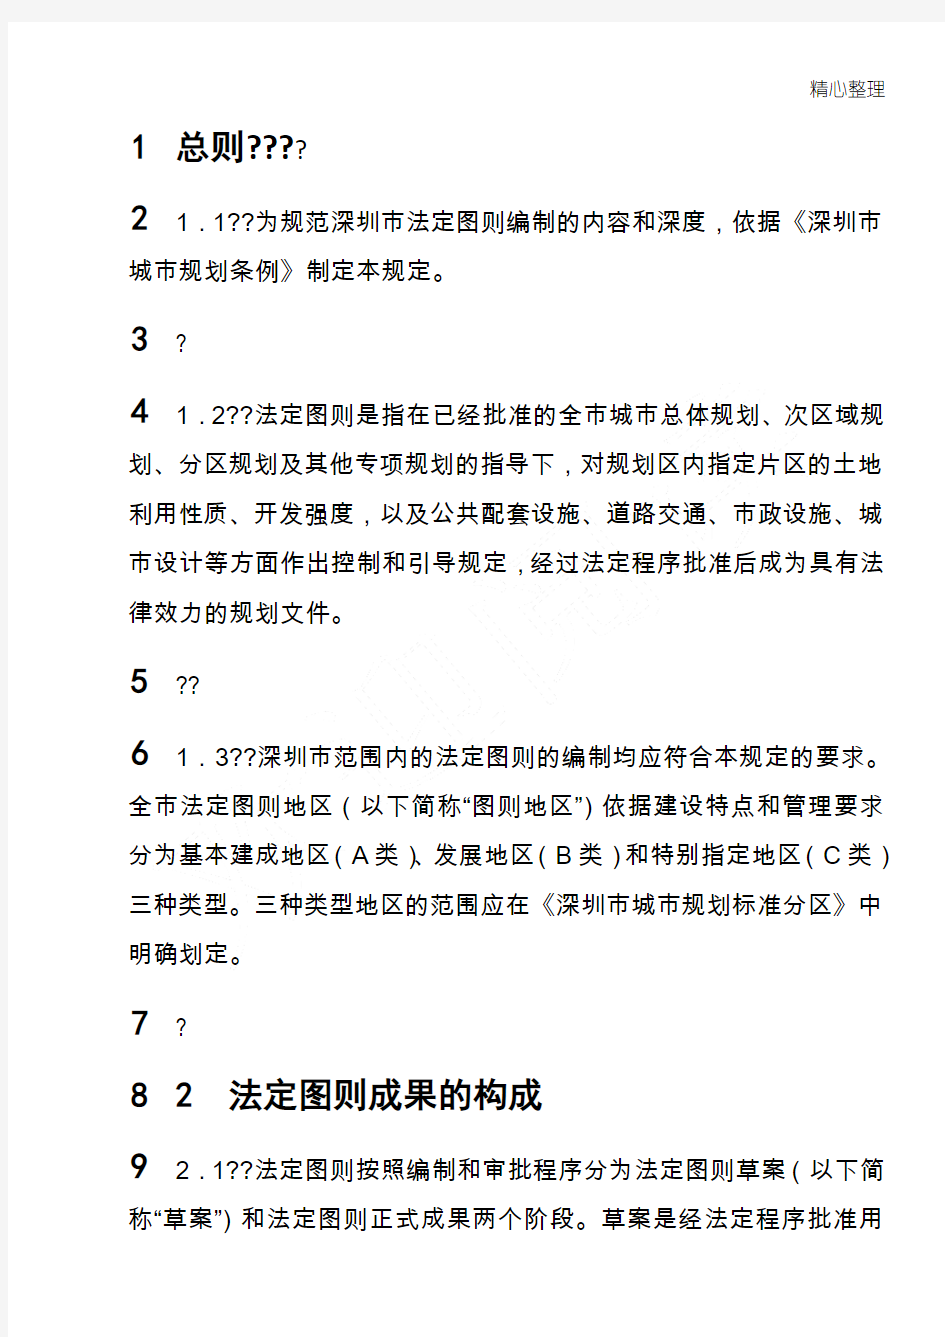 深圳市法定图则法律解释